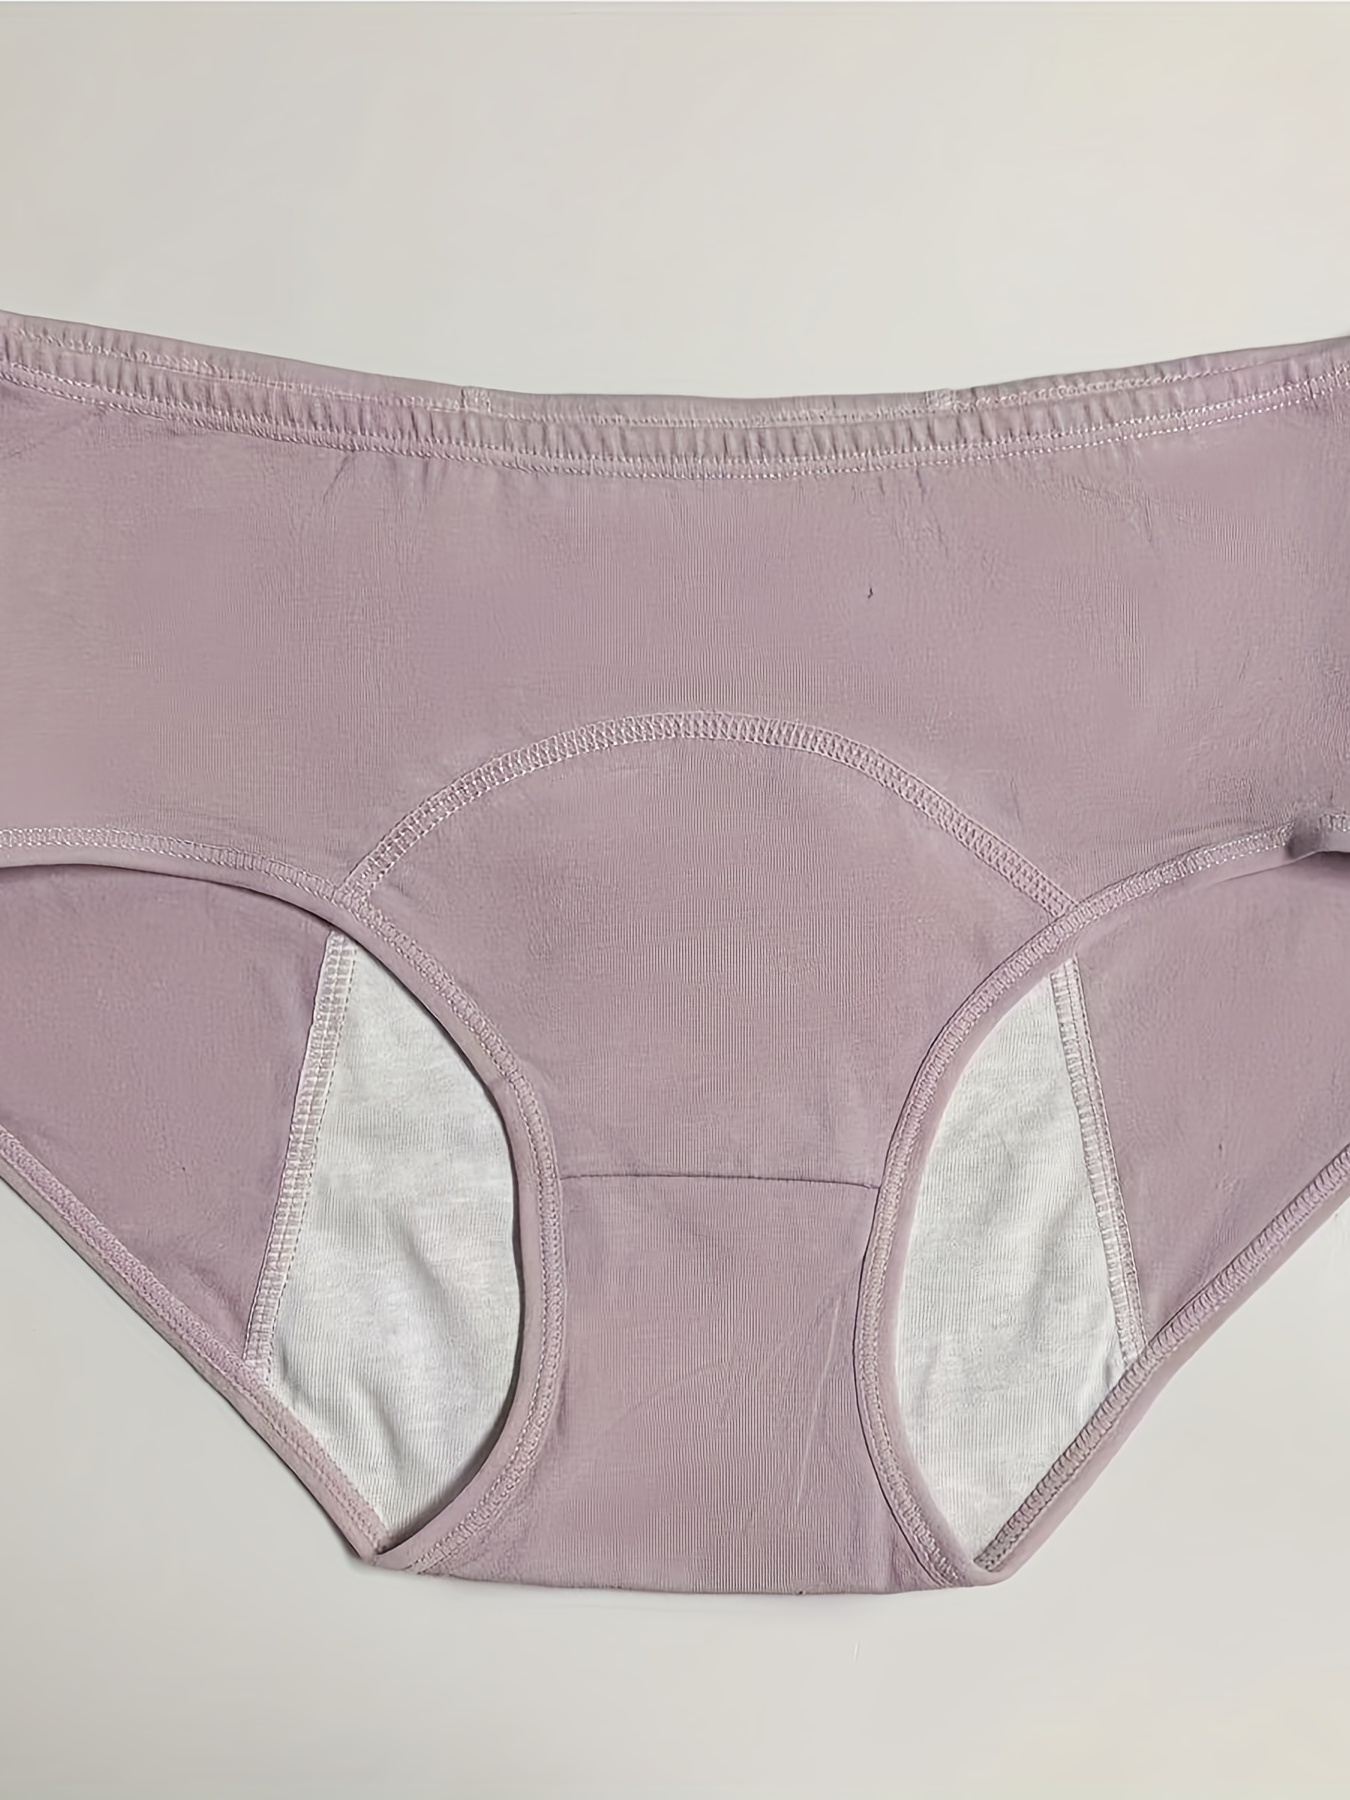 Menstrual Period Panties Comfy Breathable Full coverange - Temu Canada